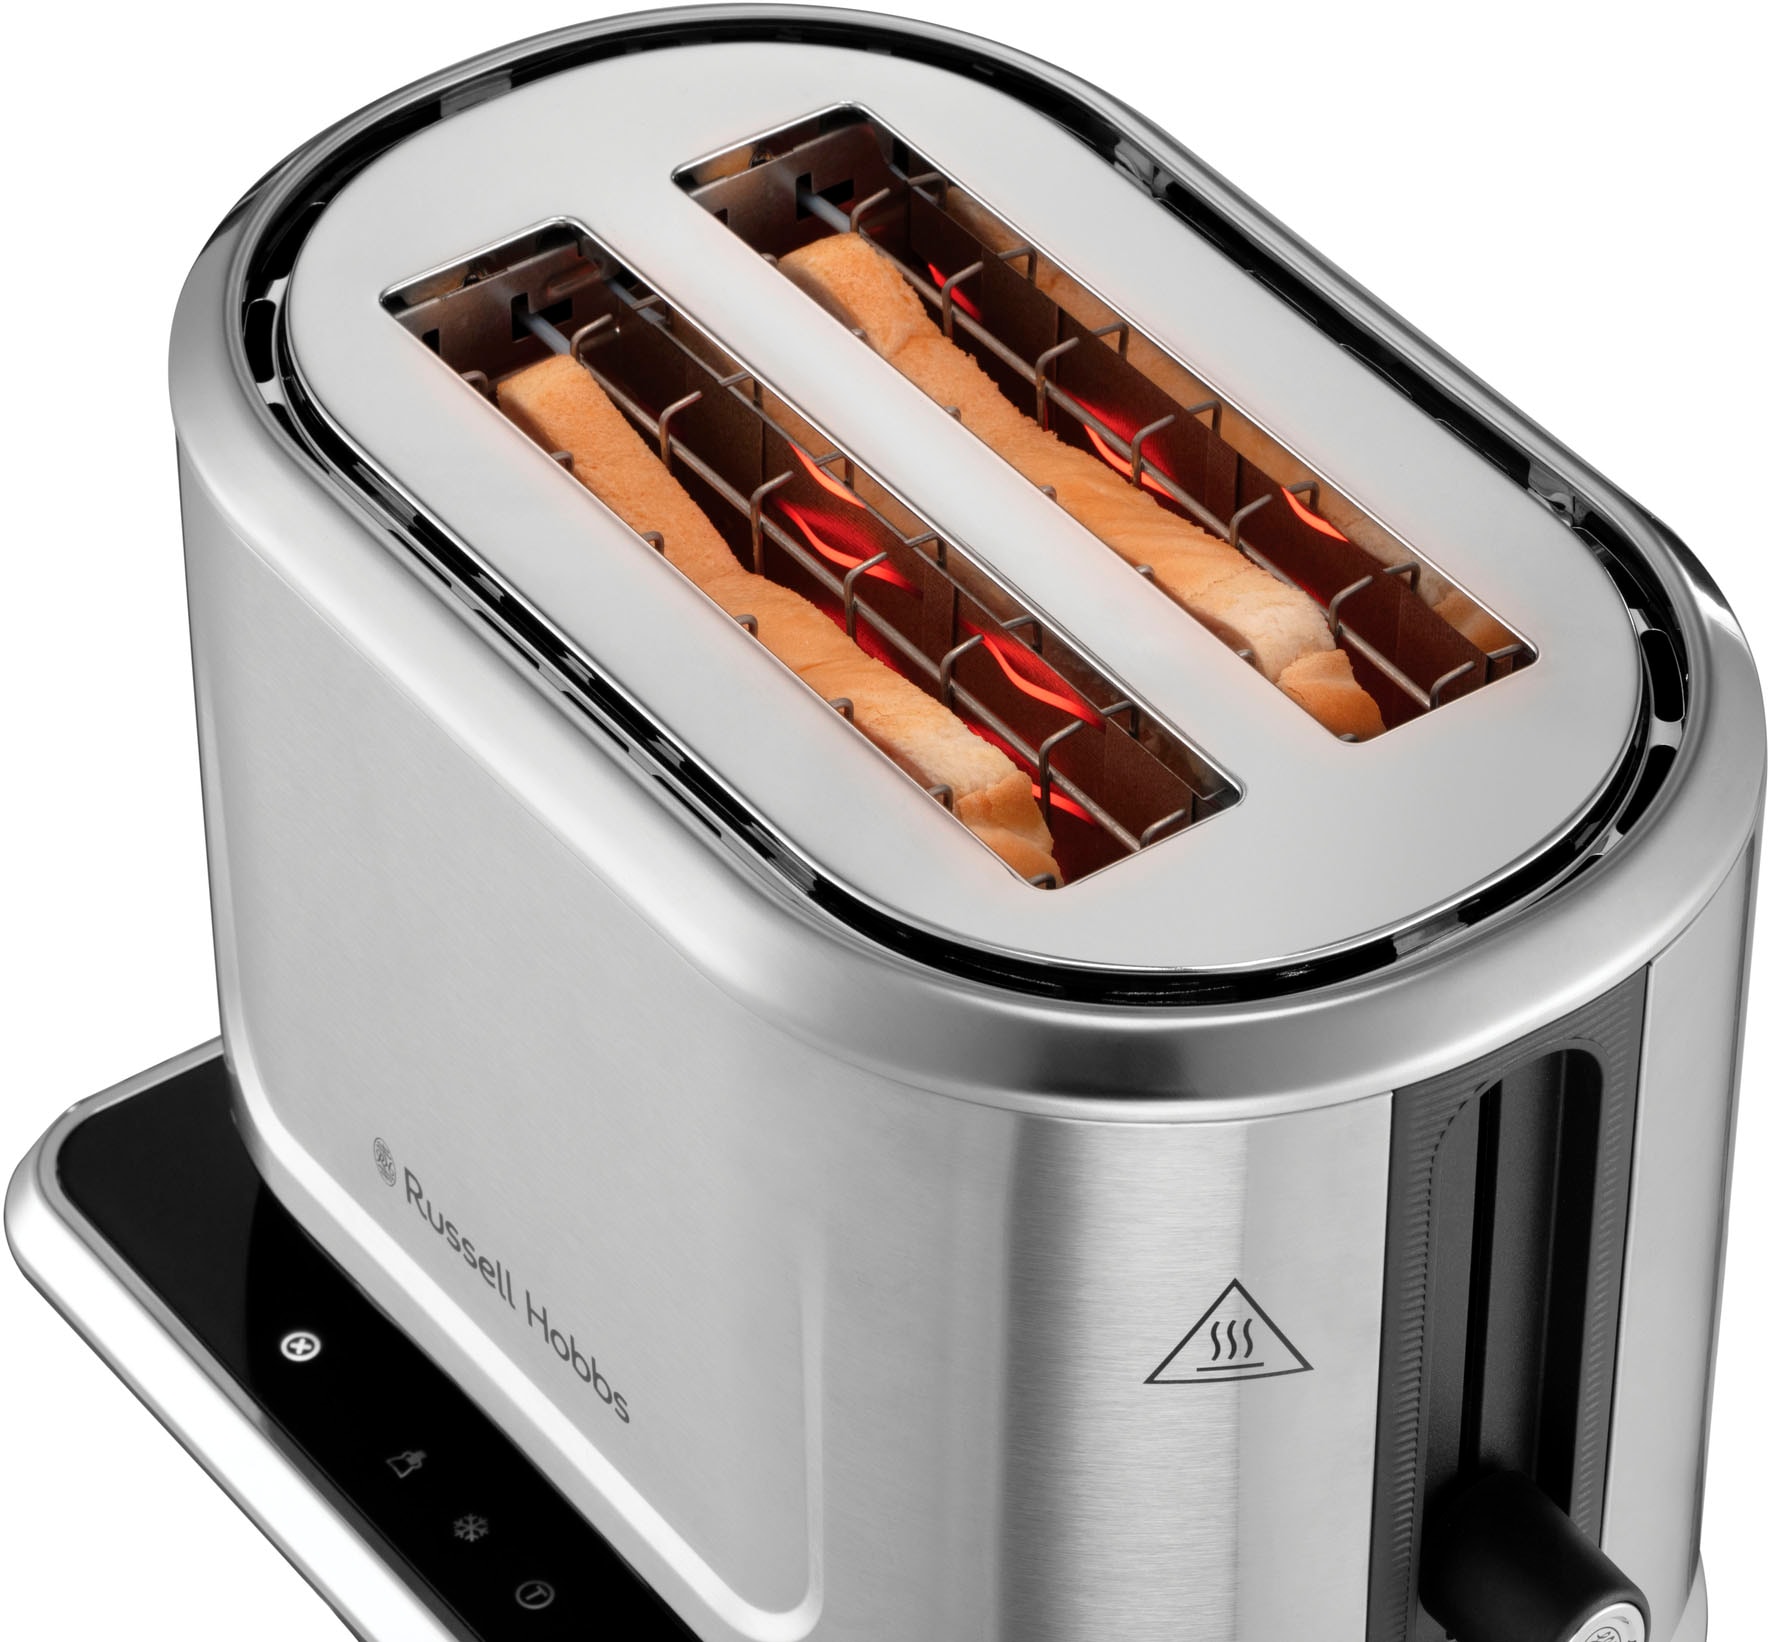 RUSSELL HOBBS Toaster »Attentiv 26210-56«, 2 lange Schlitze, für 2 Scheiben, 1640 W